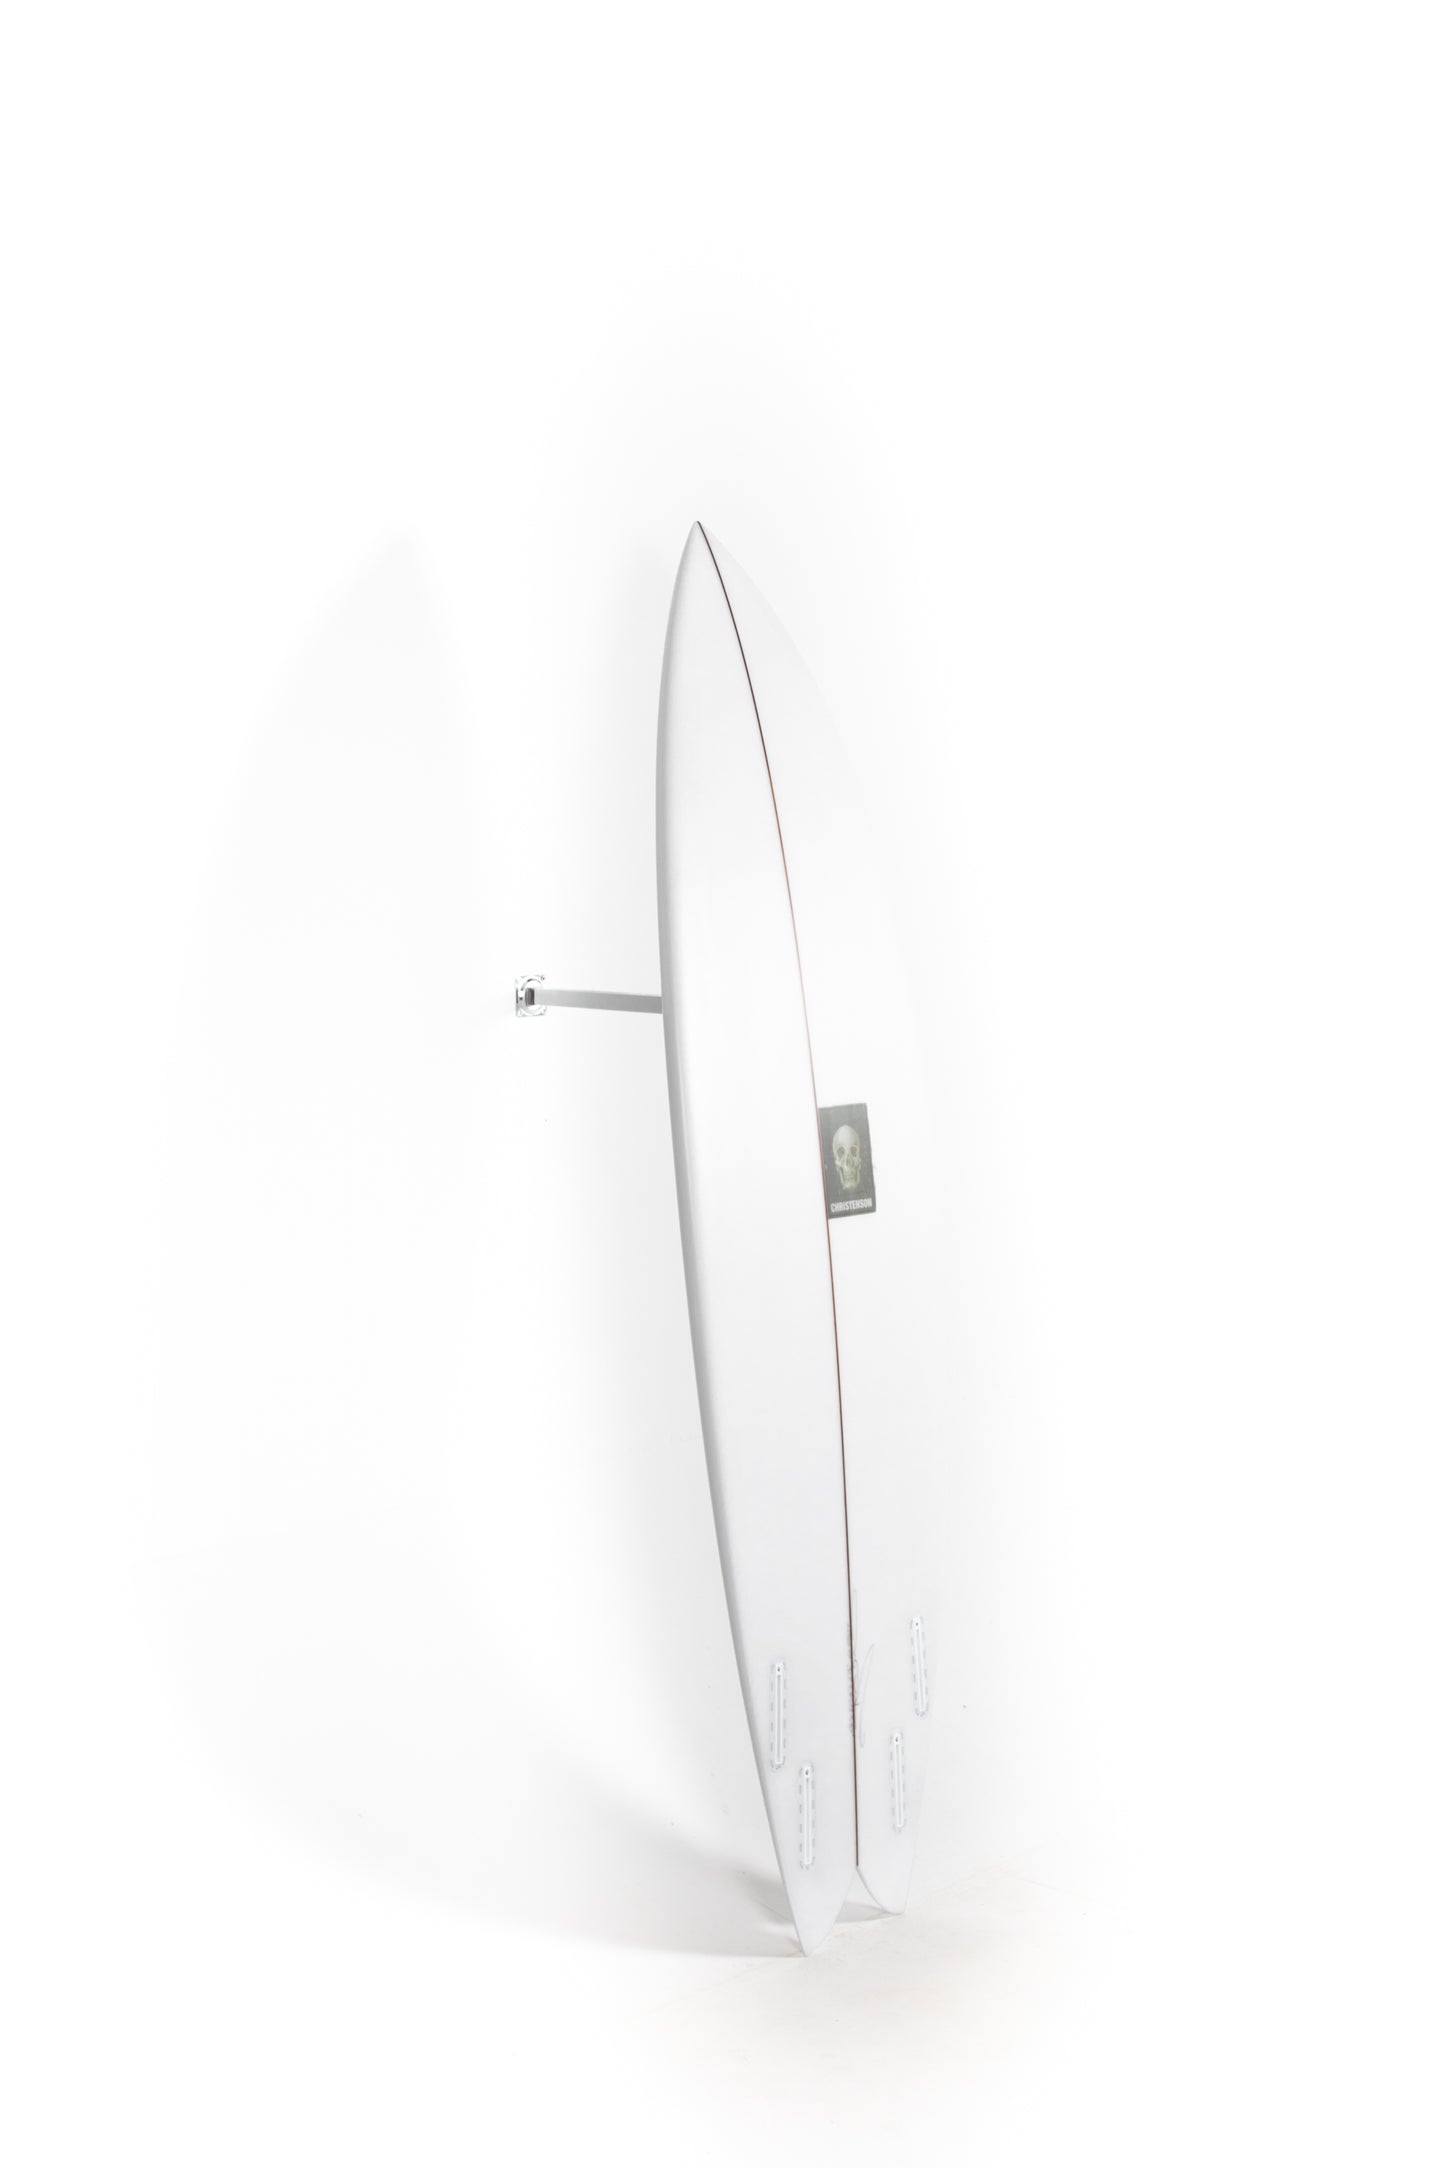 
                  
                    Pukas Surf Shop - Christenson Surfboards - NAUTILUS - 6'4" x 20 3/8 x 2 1/2 - CX04037
                  
                